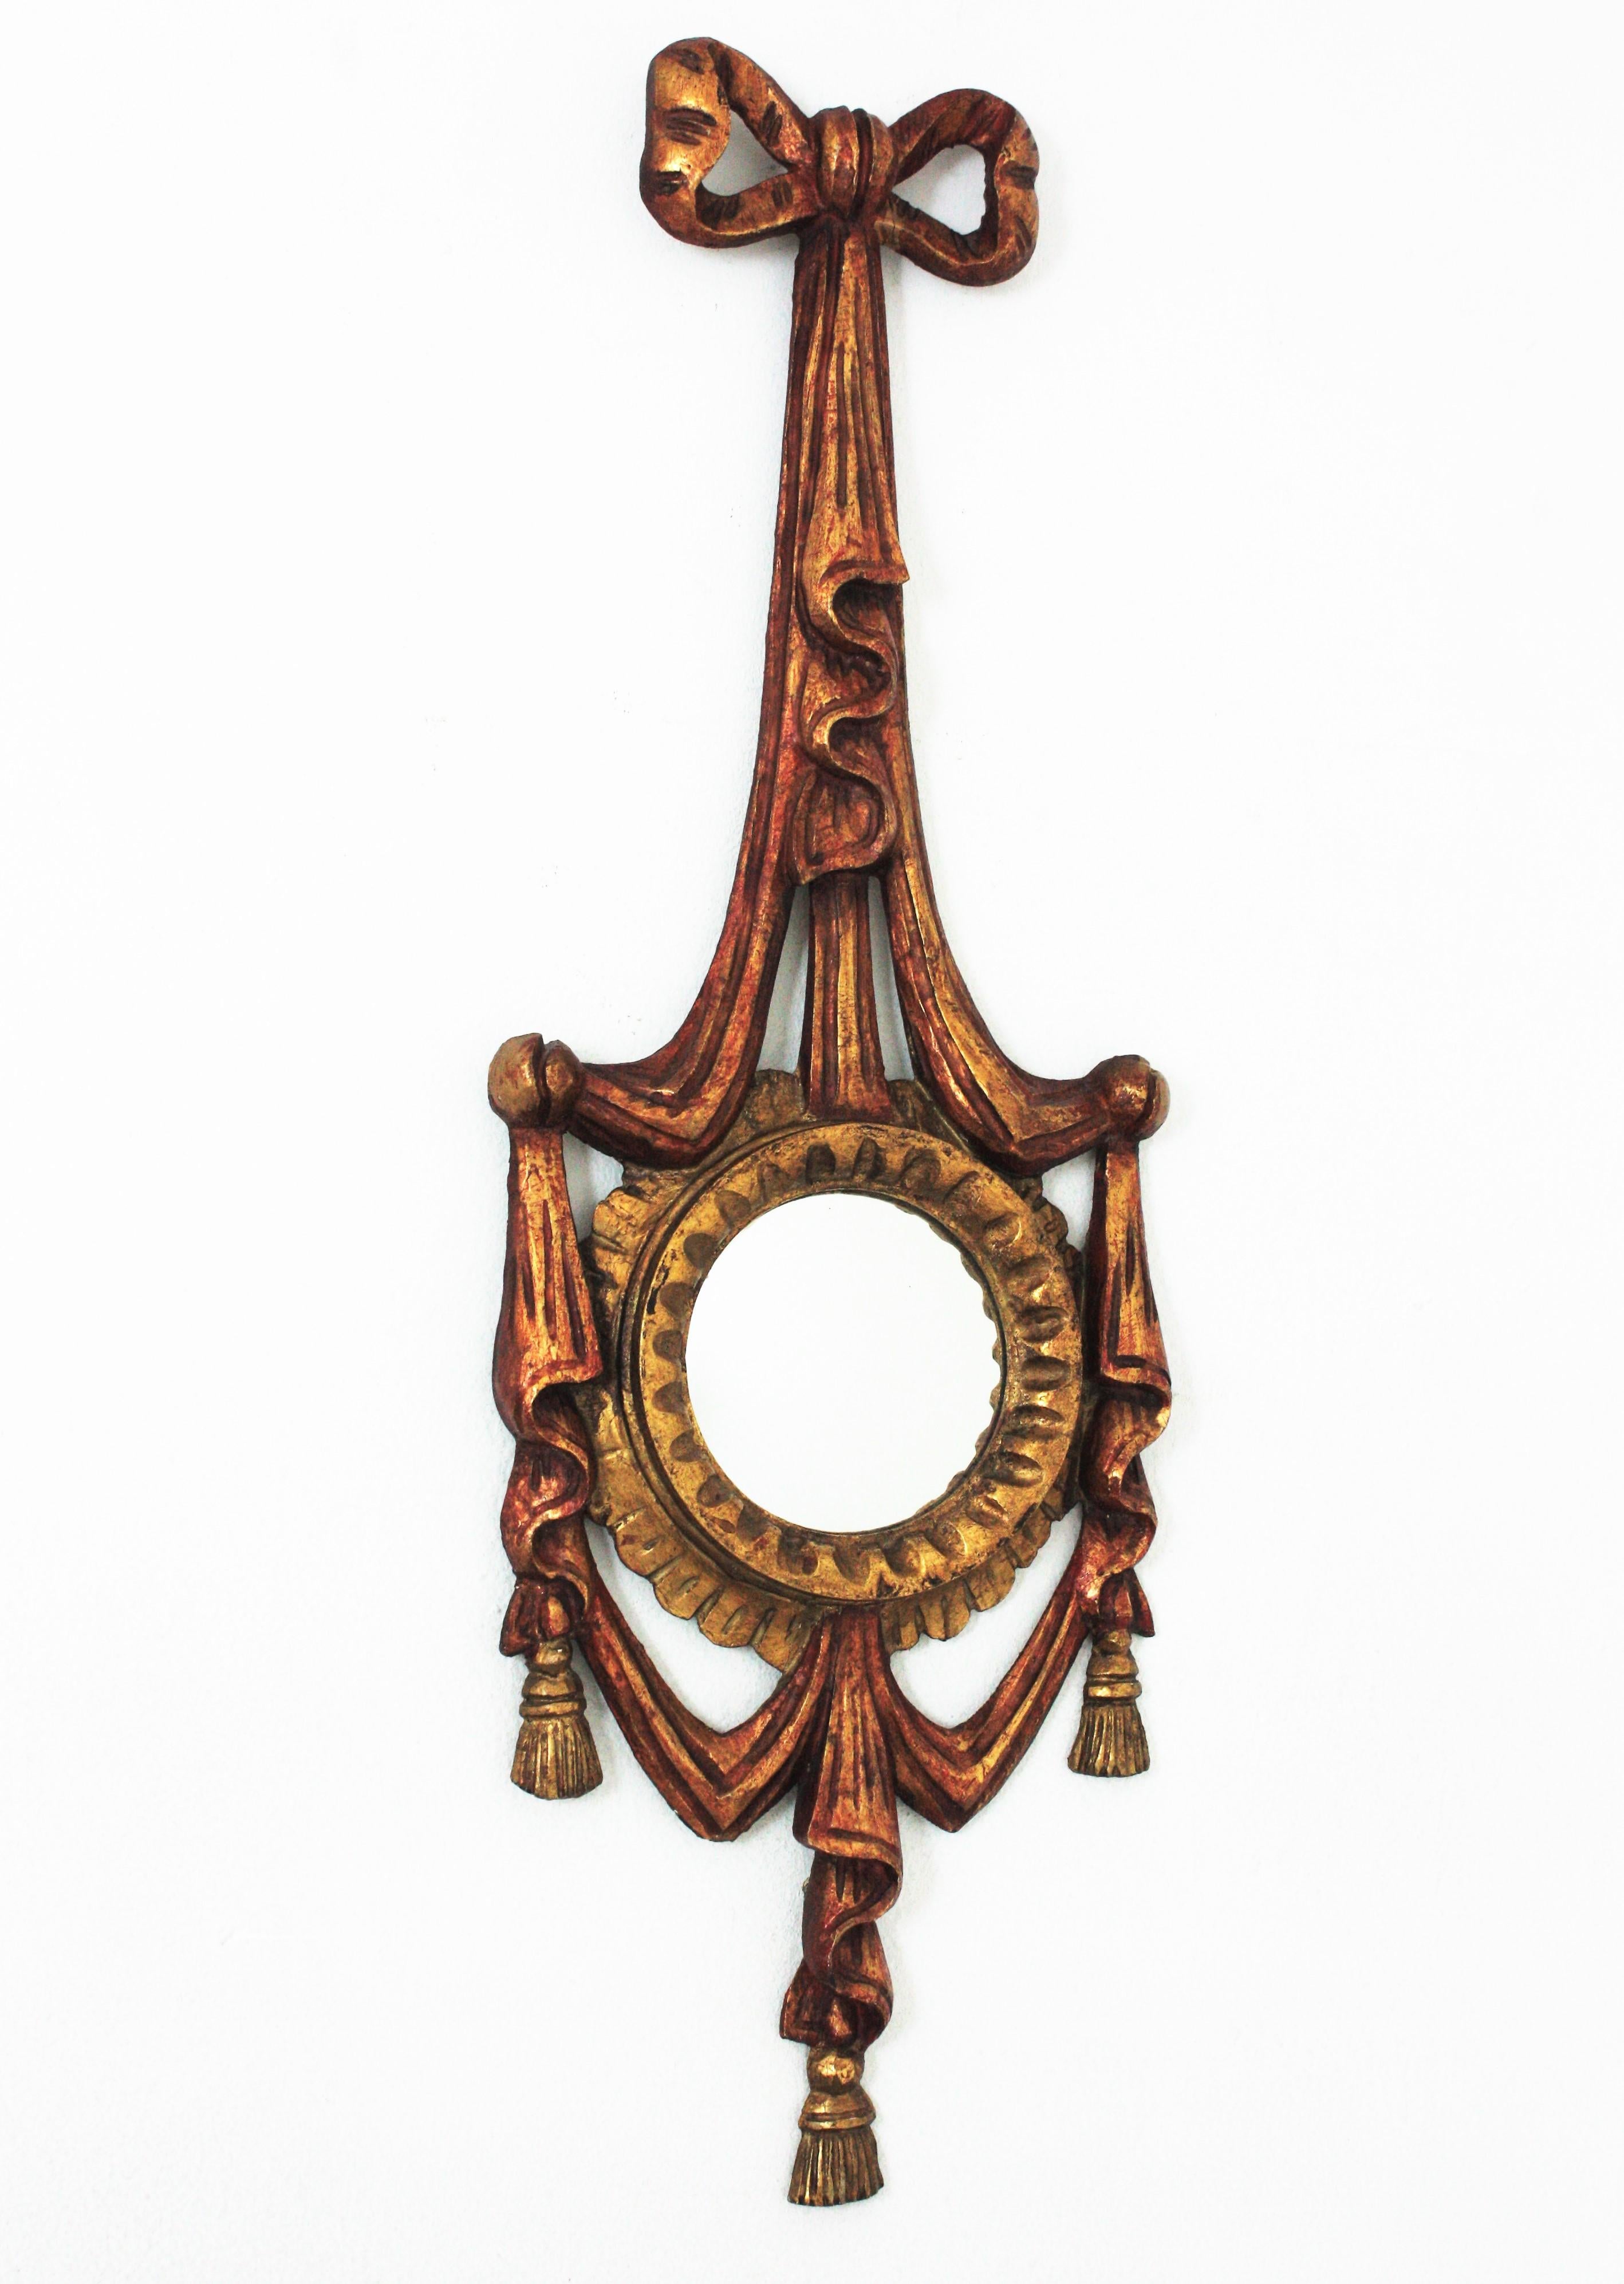 Miroir unique en son genre en bois doré sculpté avec des détails de rubans et un fronton en arc. Italie, années 1940
Ce miroir mural étonnant a un verre convexe et est joliment décoré d'un cadre à nœuds et rubans dans des tons polychromes rougeâtres